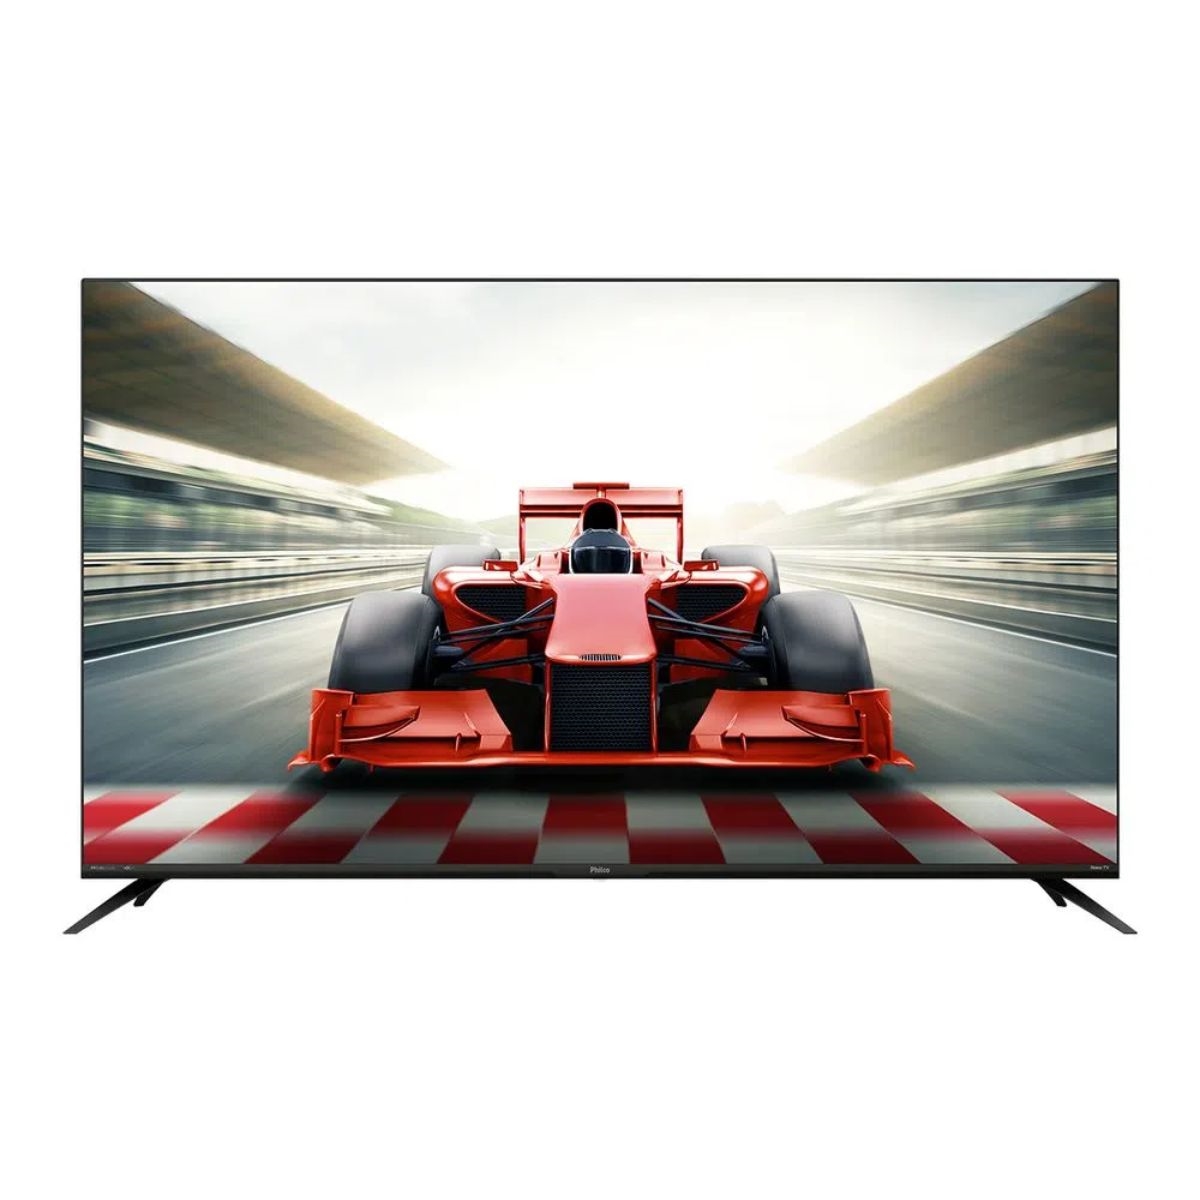 Smart Tv Roku - Loja Oficial Philco - Eletrodomésticos, Acessórios e  Eletroportáteis